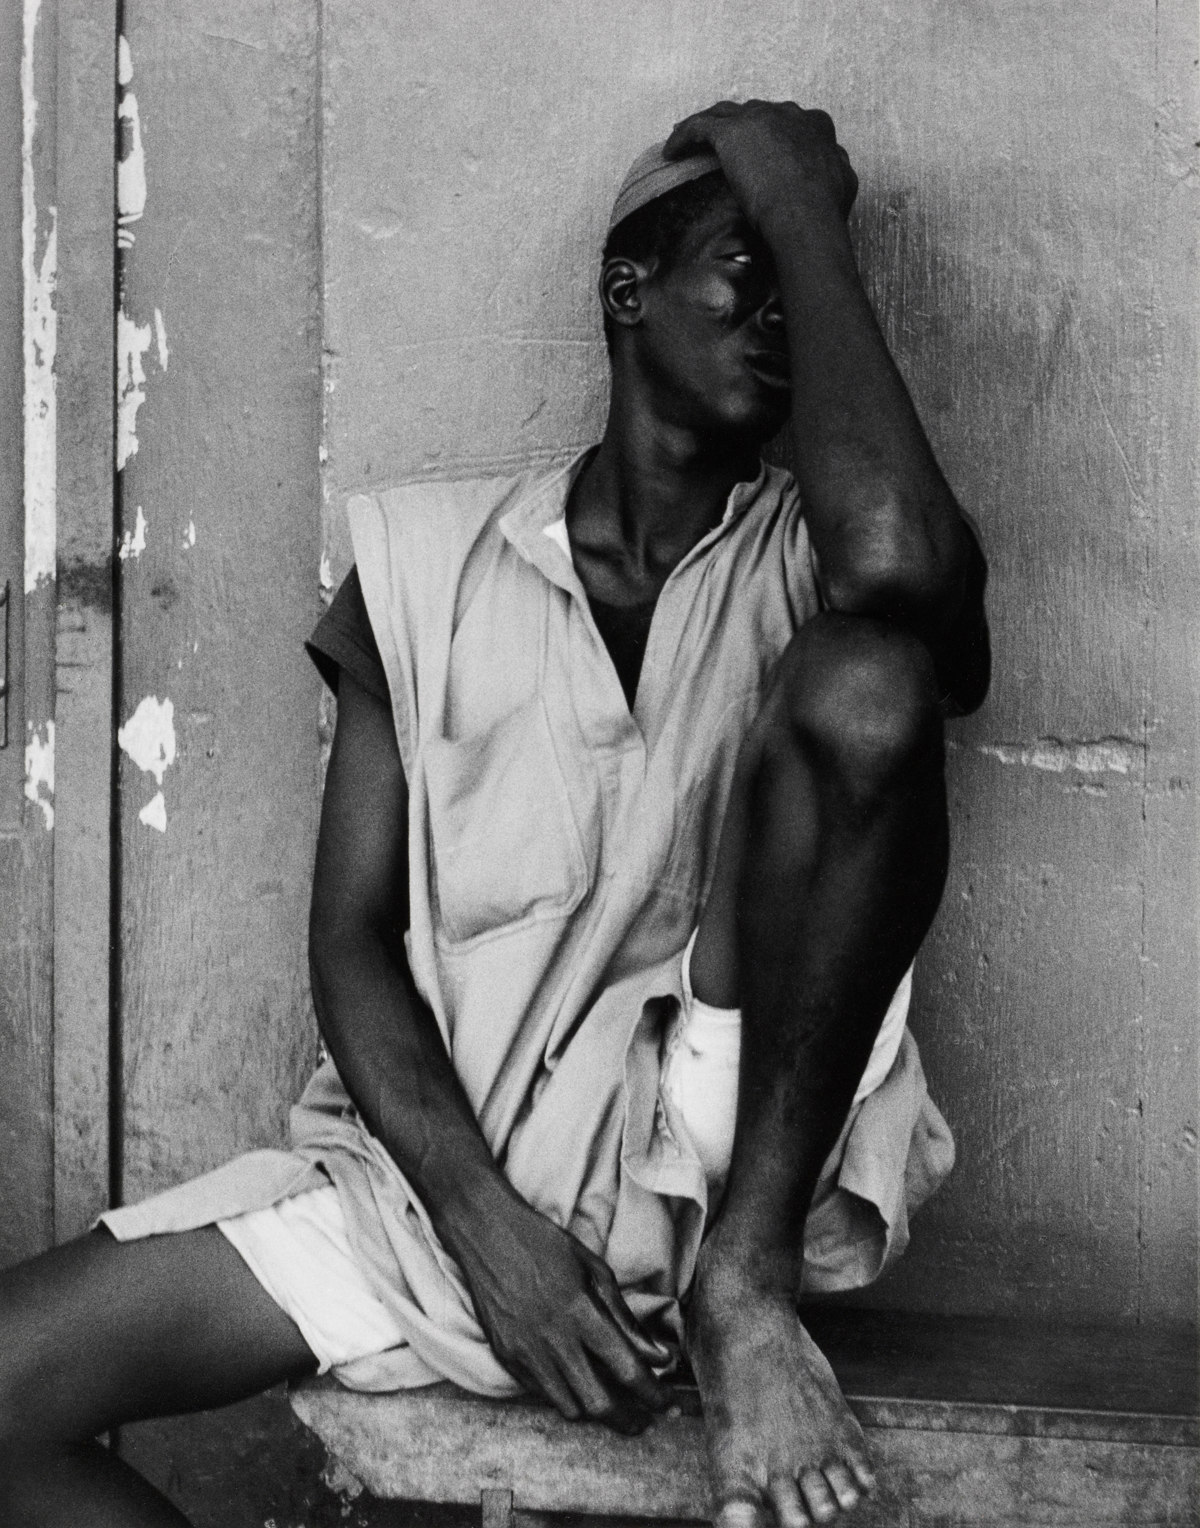 Sleeping Man, Makola Market, Accra, Ghana [Hombre durmiendo, mercado de Makola, Acra, Ghana] © Aperture Foundation, Inc., Paul Strand Archive © COLECCIONES Fundación MAPFRE